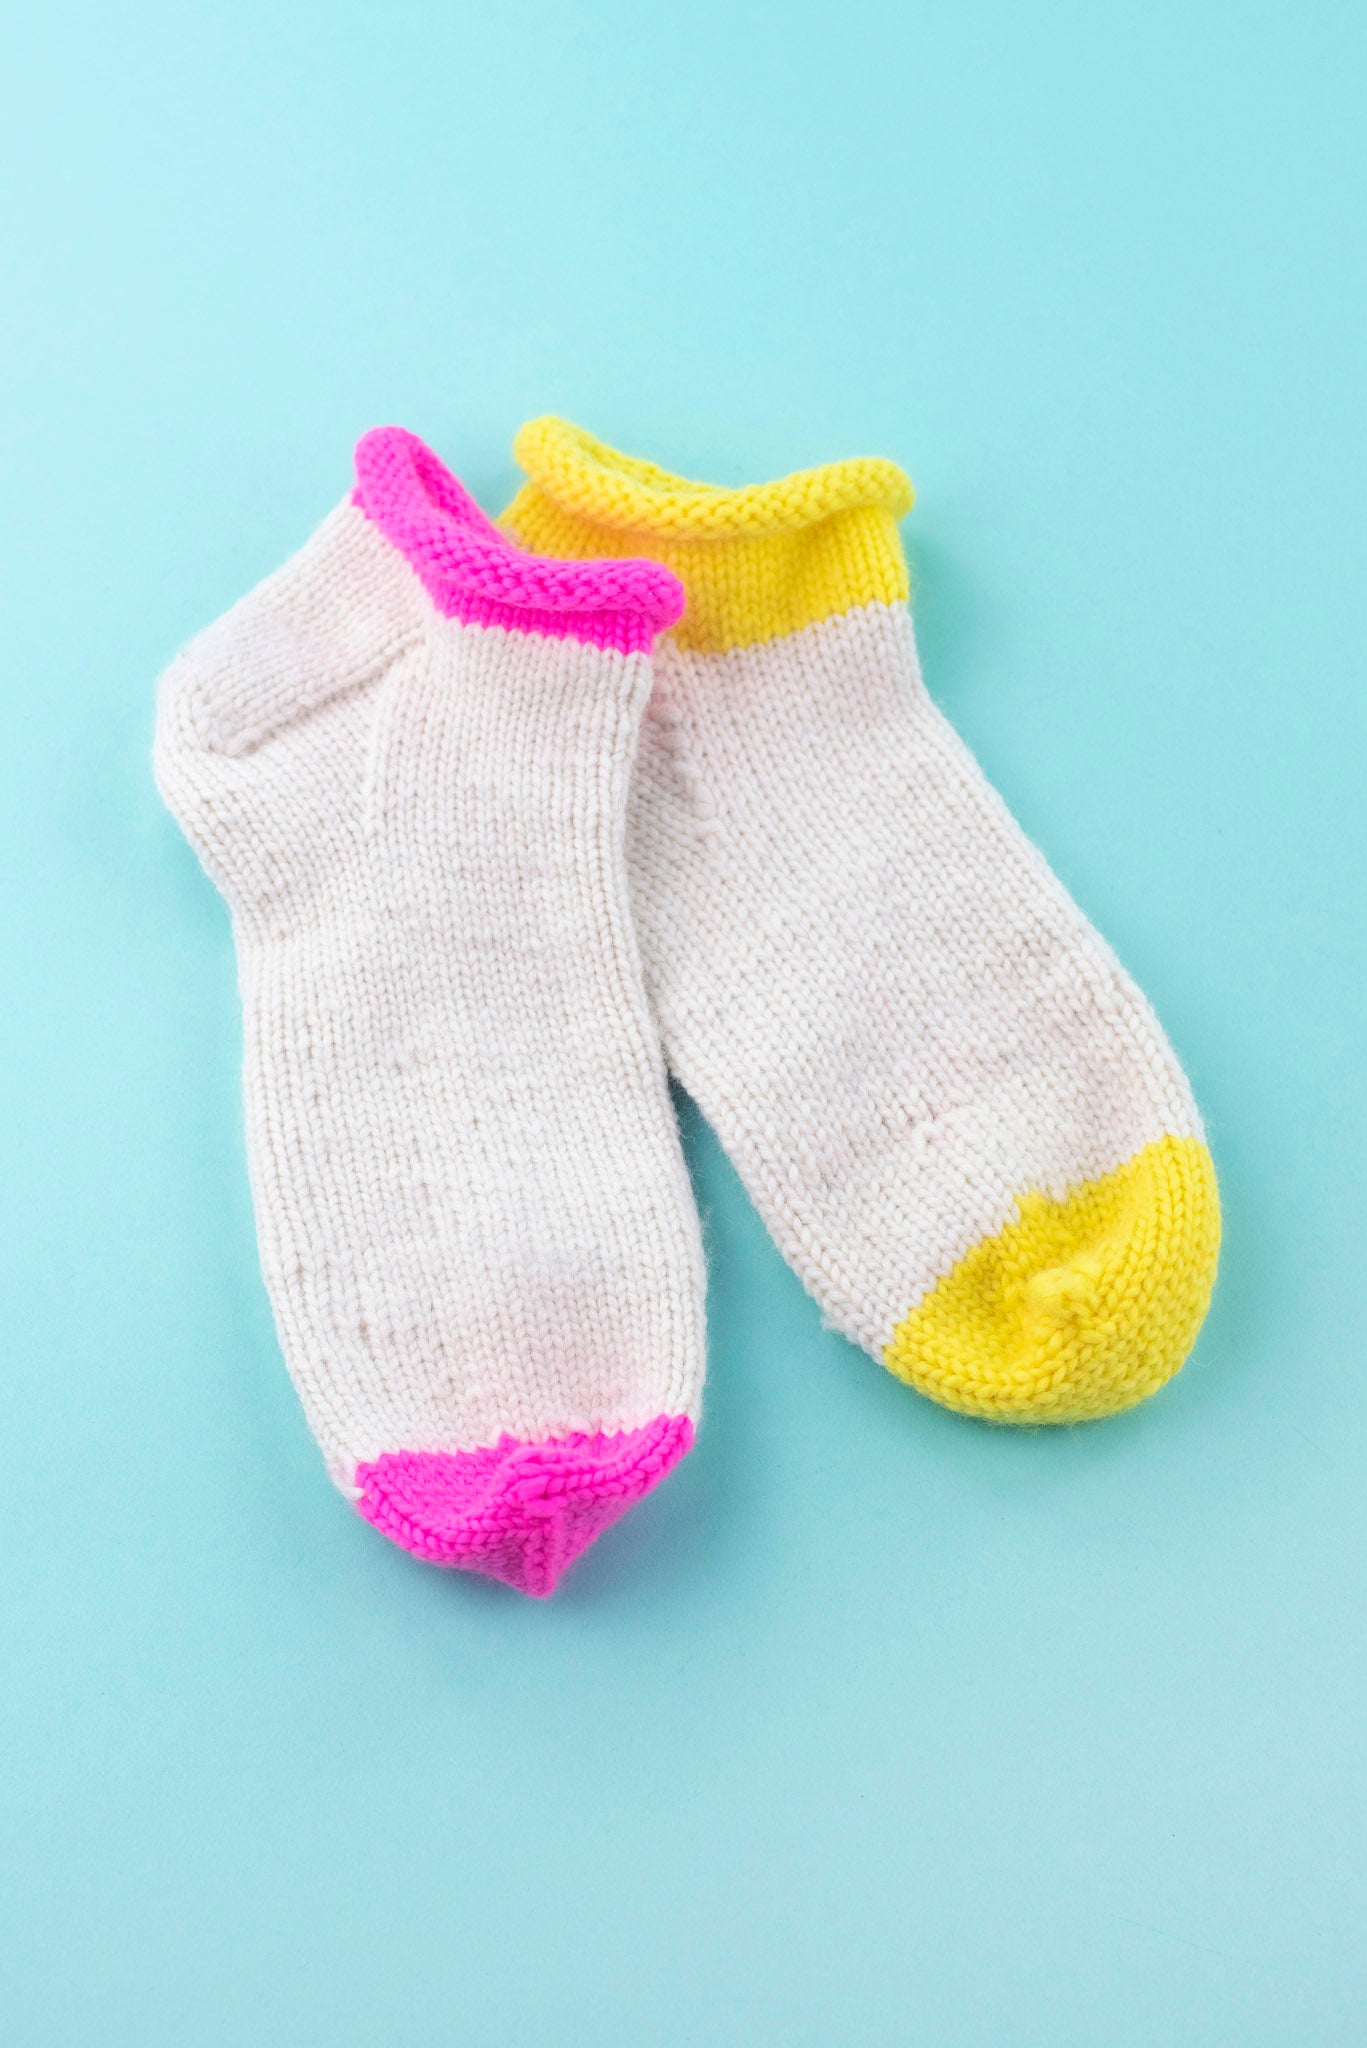 10 Modern Sock Knitting Kits for Beginners (Hand-Picked)